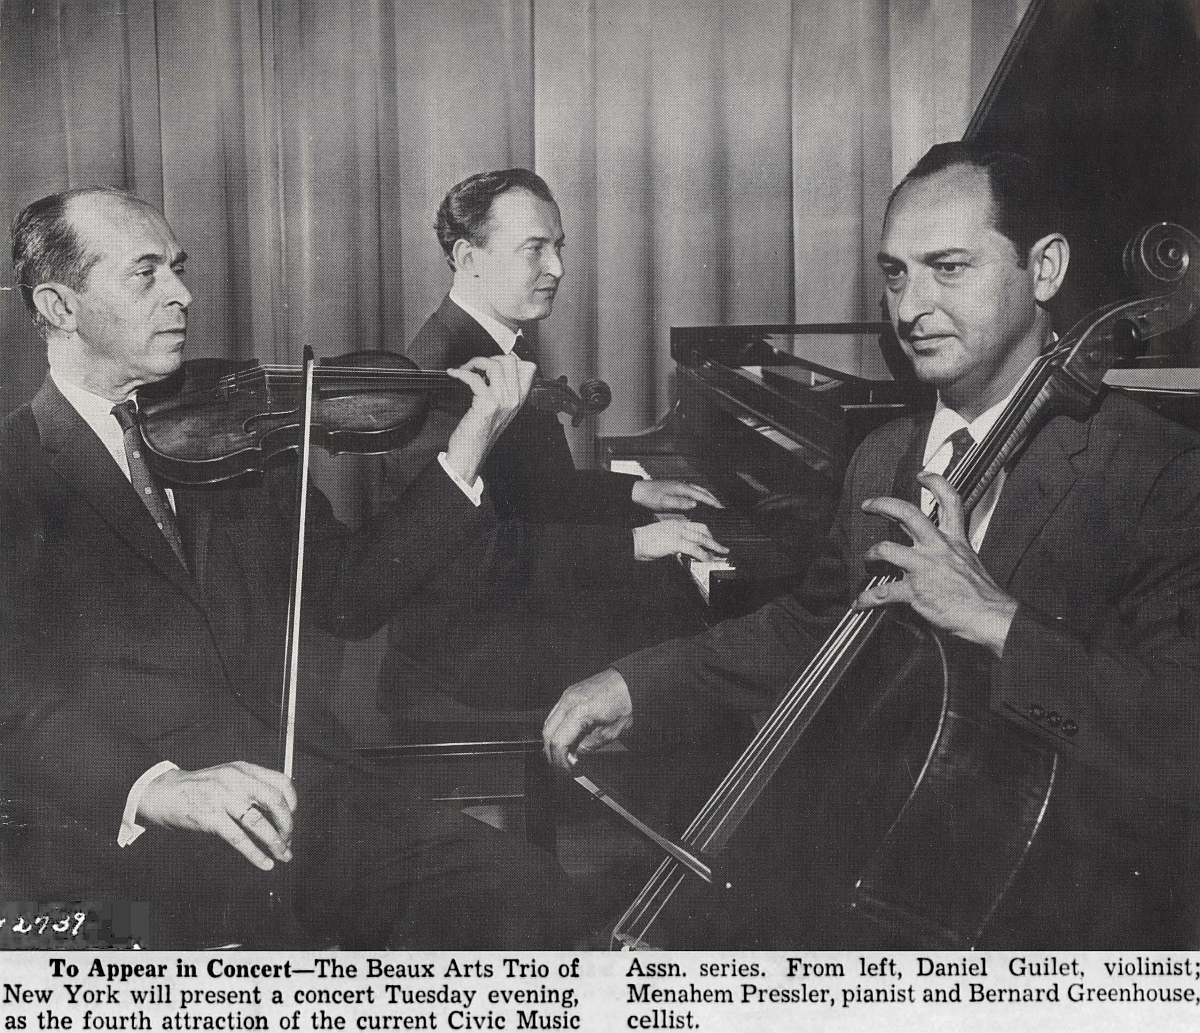 Daniel Guilet est avant tout connu comme membre fondateur du Trio Beaux Arts, avec le pianiste Menahem Pressler et le violoncelliste Bernard Greenhouse